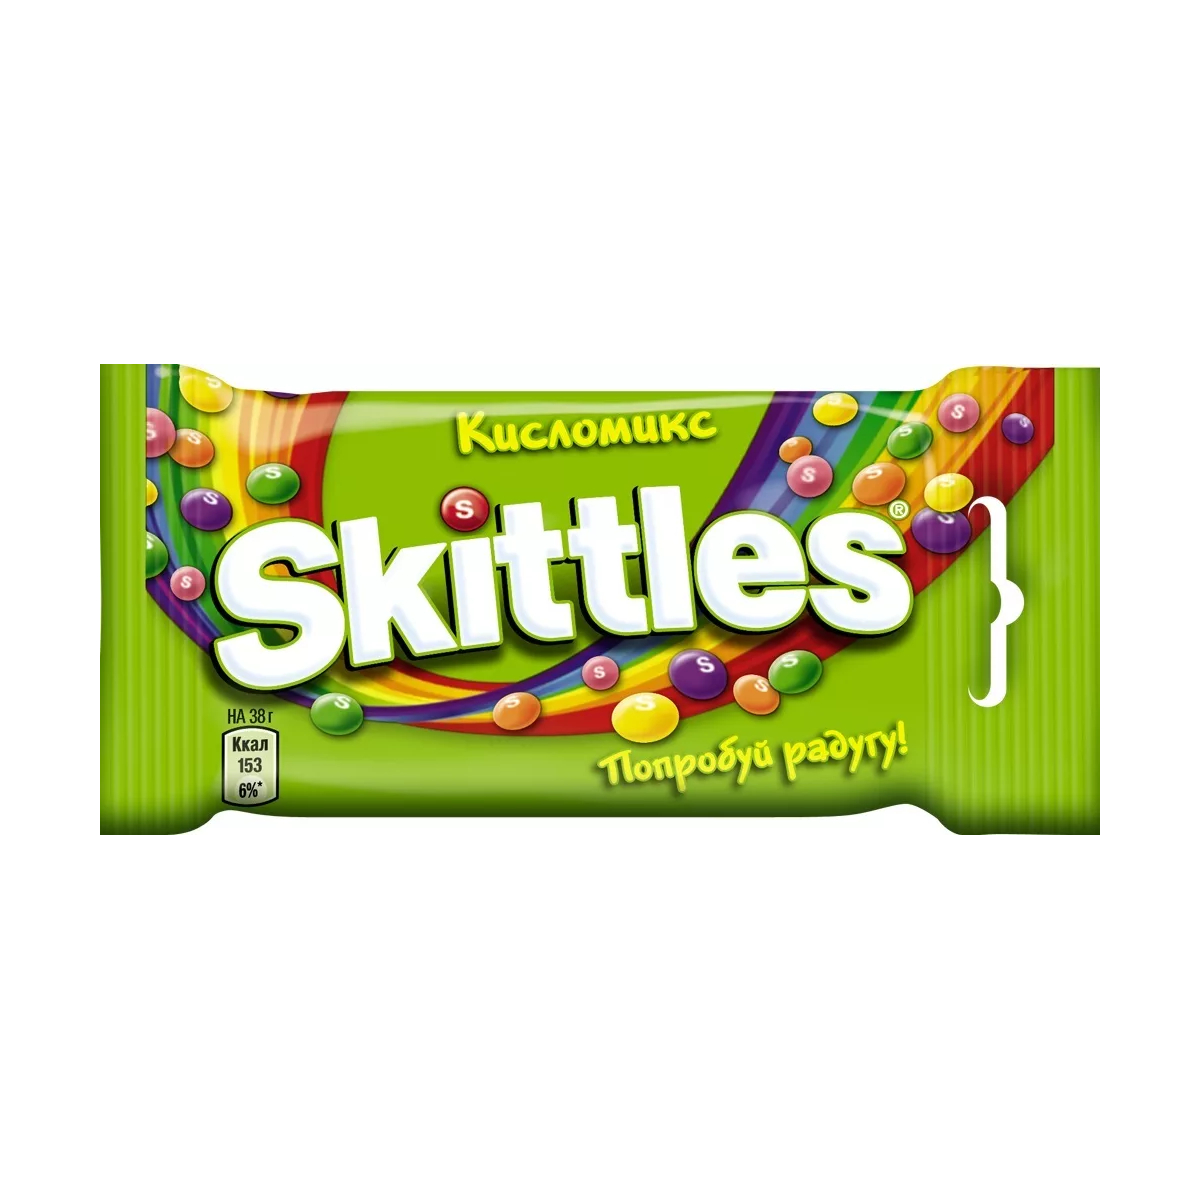 Драже Skittles Кисломикс, в разноцветной глазури, 38 г цена и фото